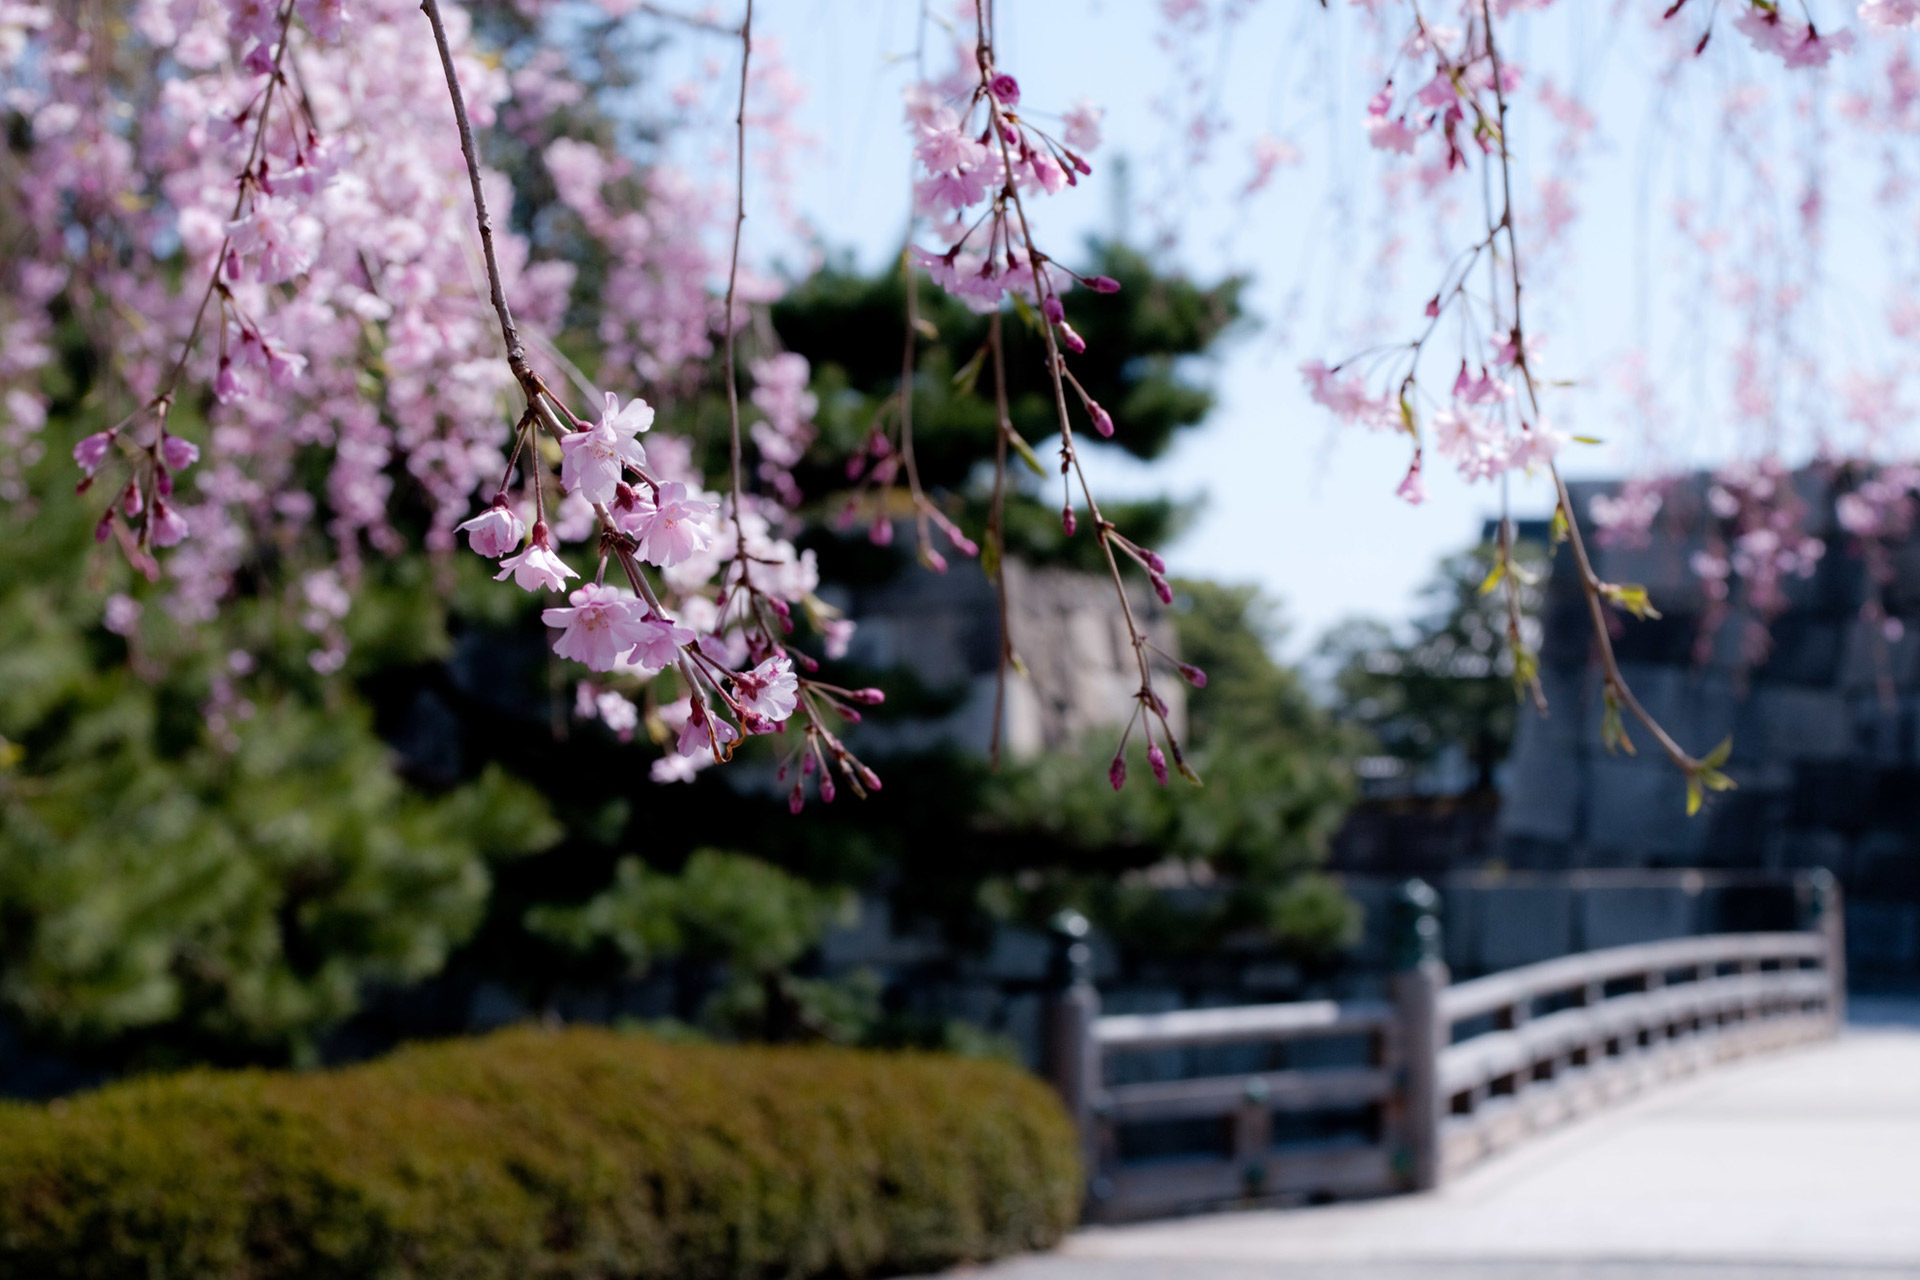 京都府内6位の桜の名所 二条城から見る美しい景色は Caedekyoto カエデ京都 紅葉と伝統美を引き継ぐバッグ